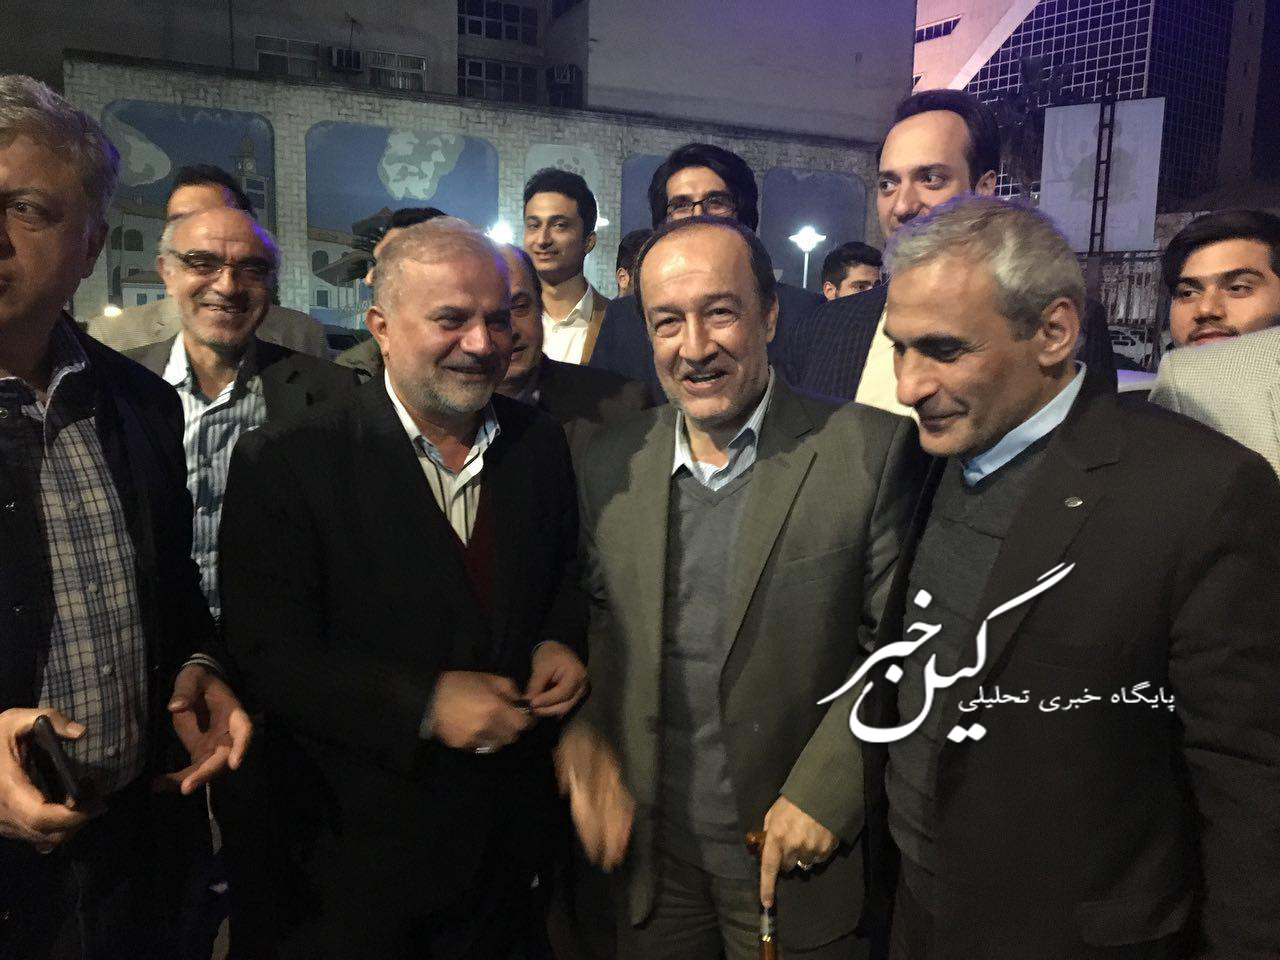 نام نویسی عبدالرضا بی آزار و احمد رمضانپور در ساعات پایانی ثبت نام کاندیداهای شورای شهر رشت+ تصاویر